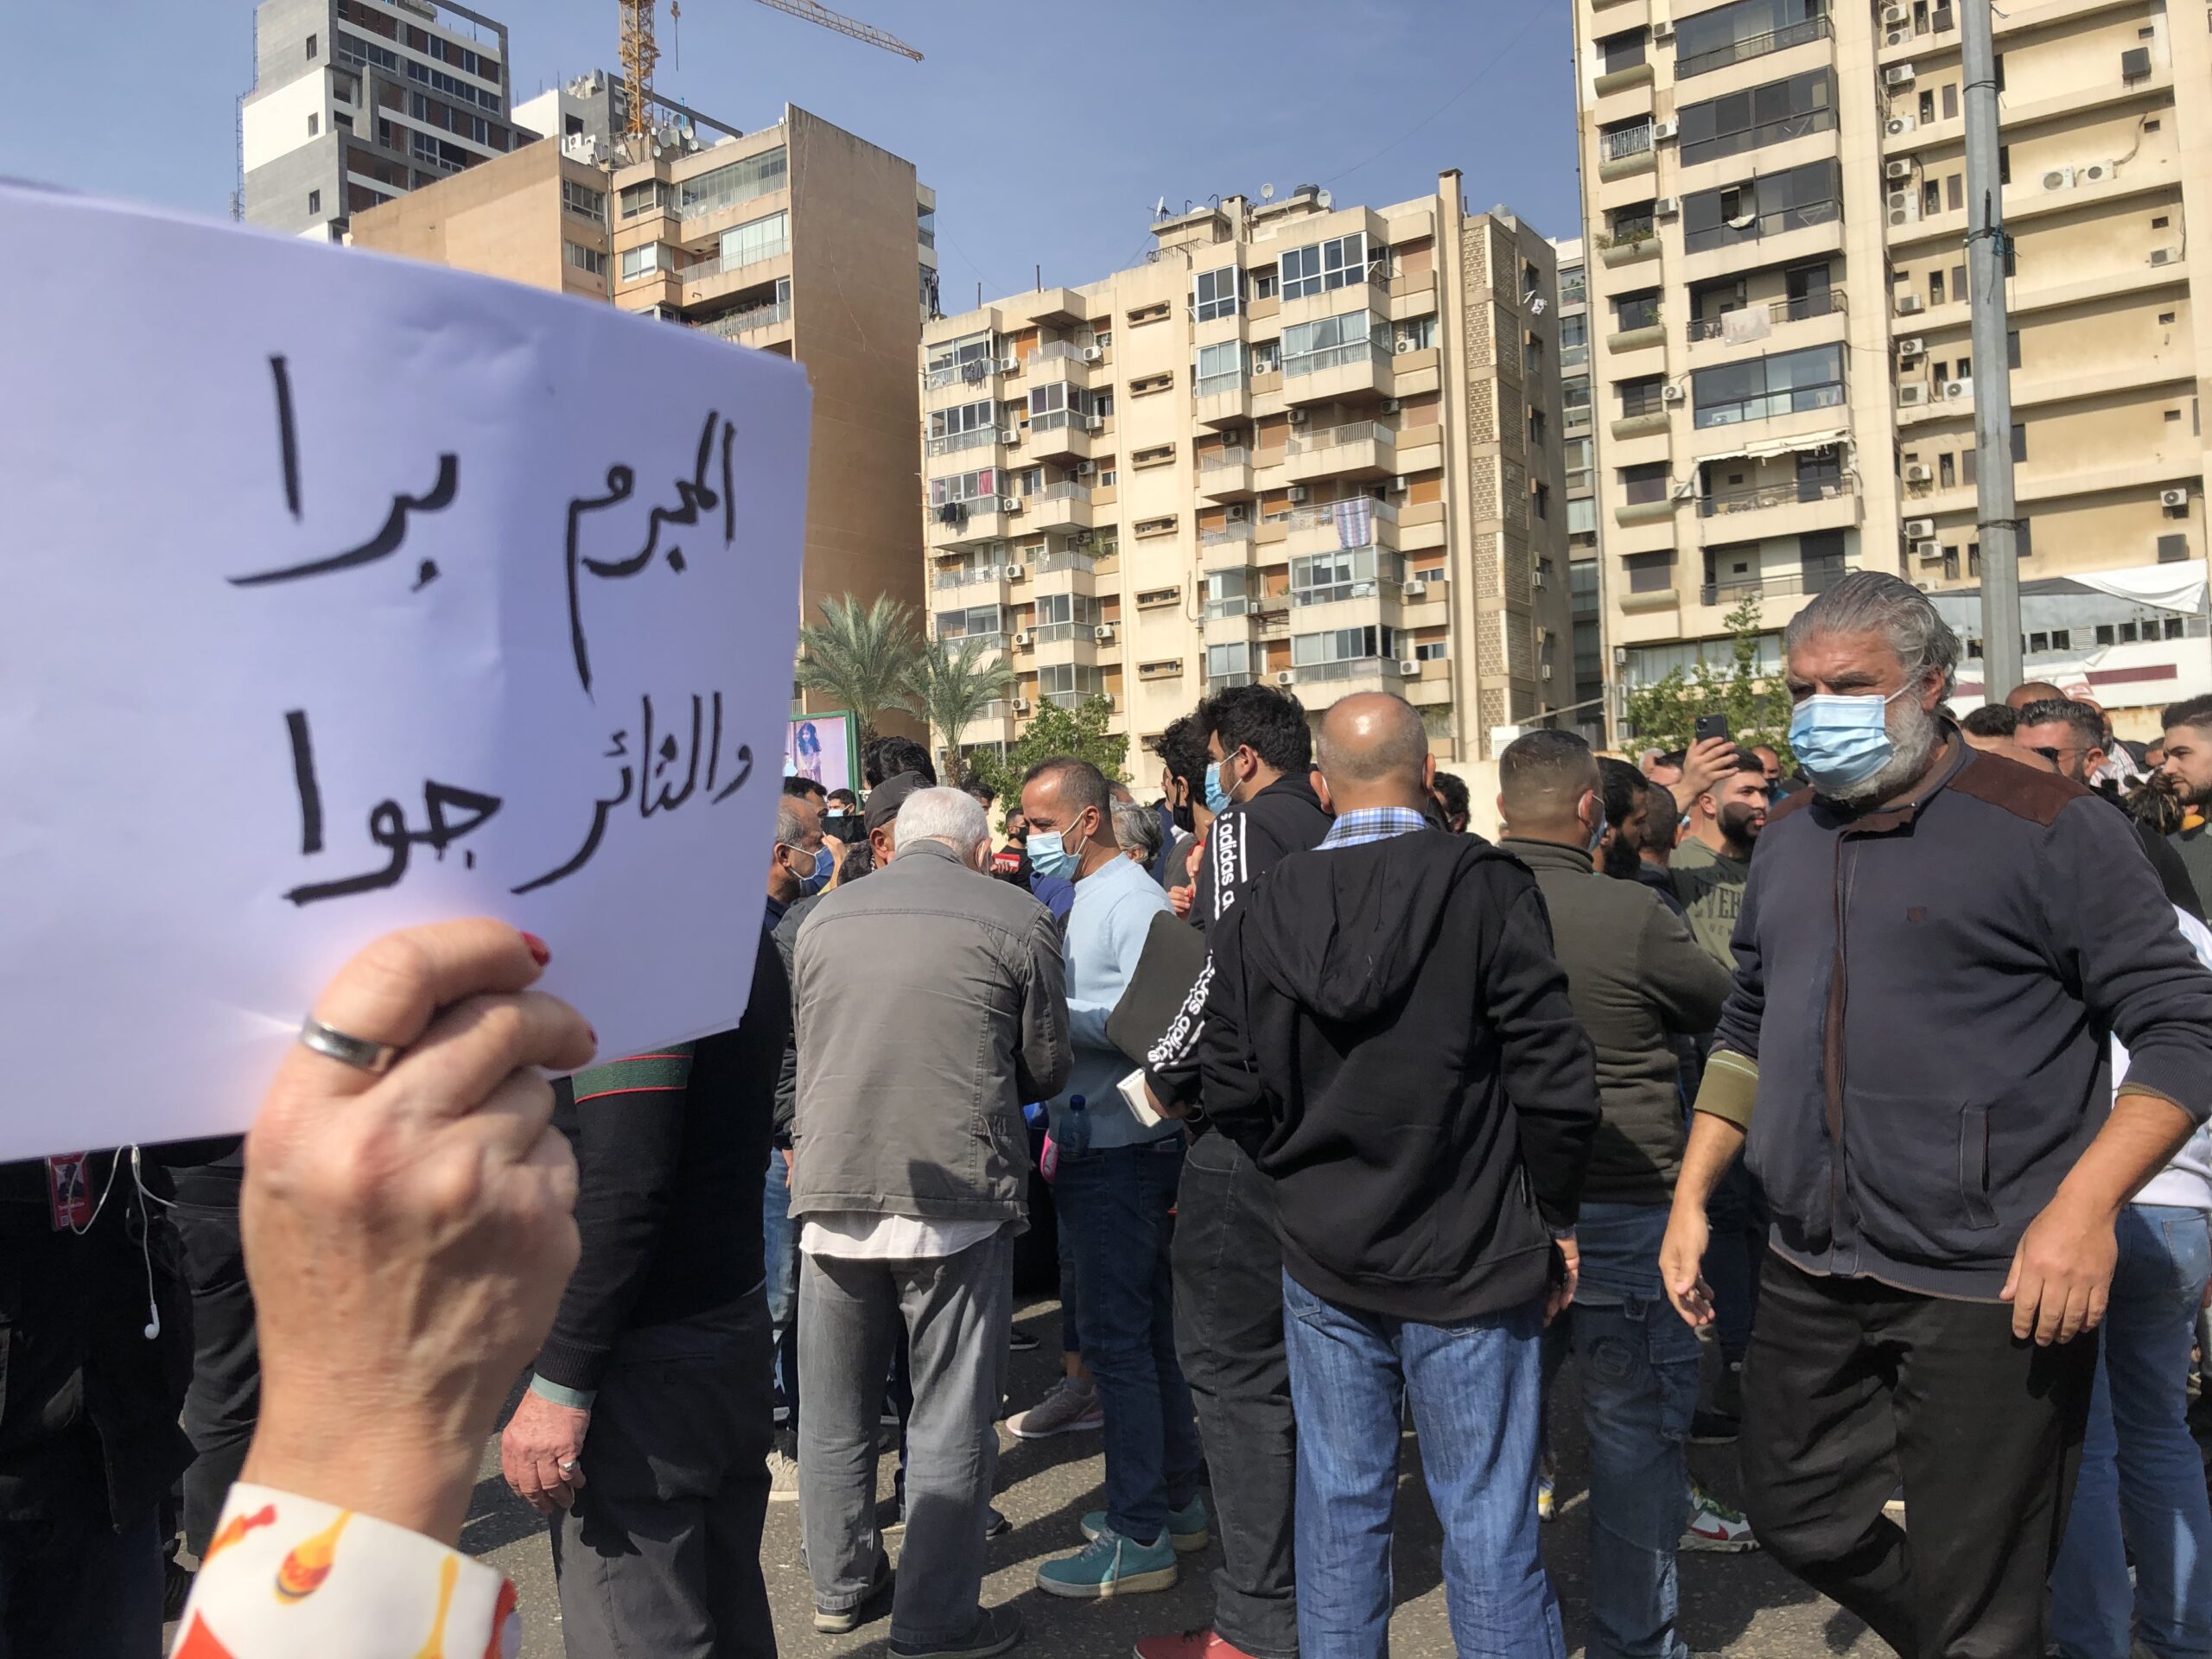 شبهات تعذيب وإخفاء قسري في ملفّات موقوفي احتجاجات طرابلس